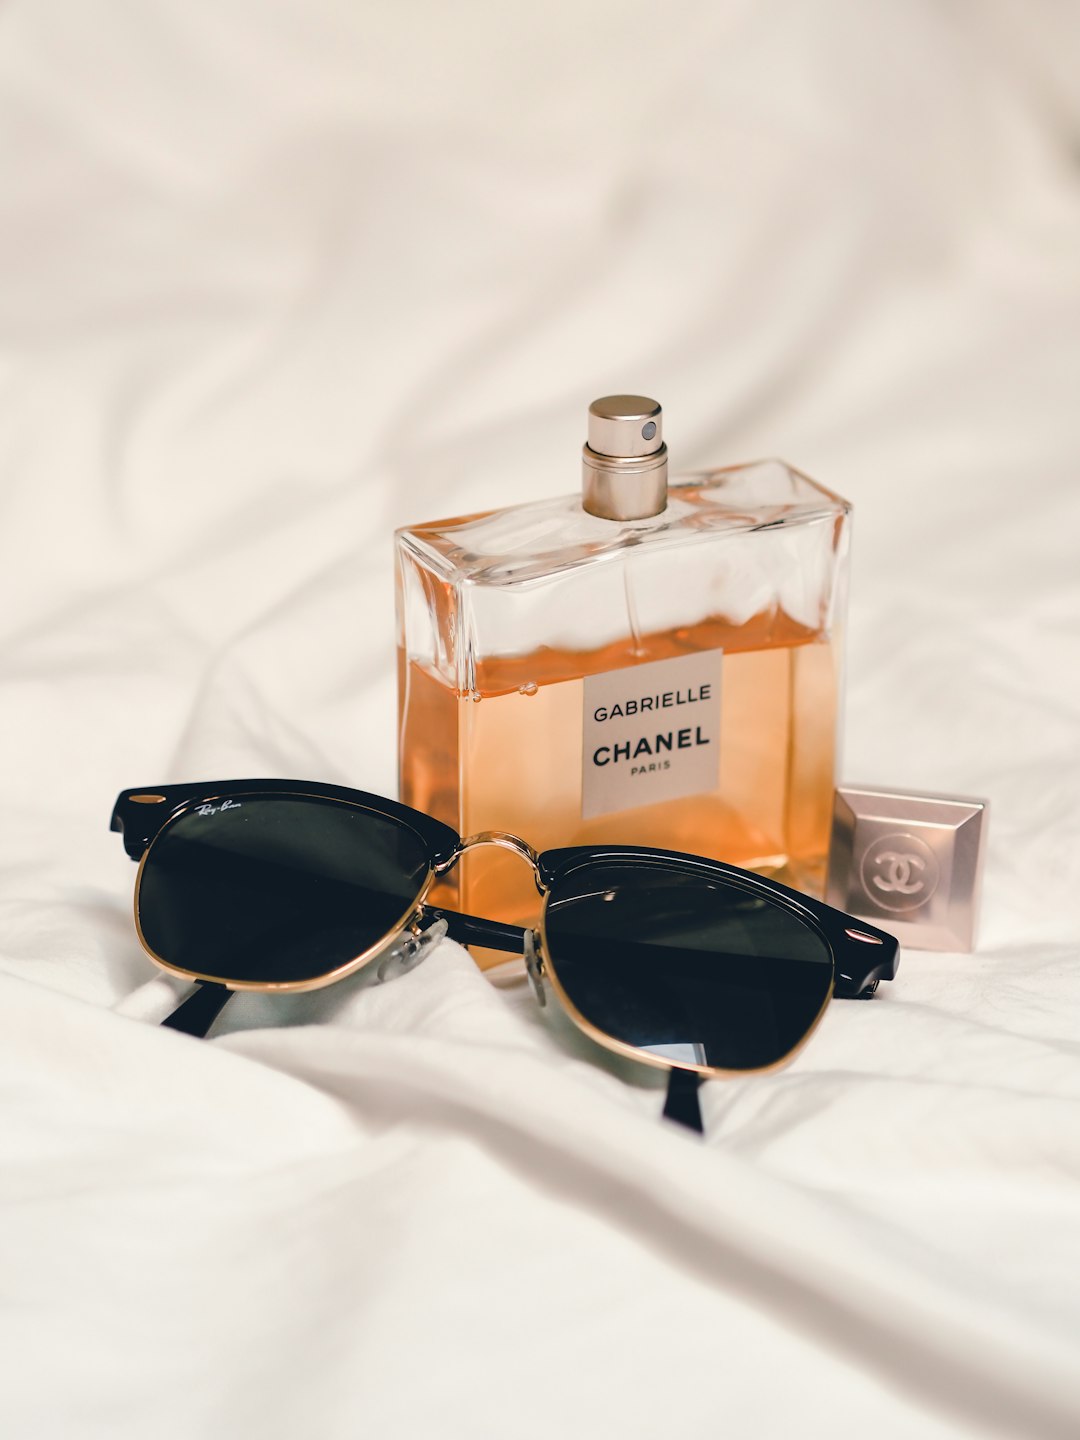 black sunglasses beside perfume bottle